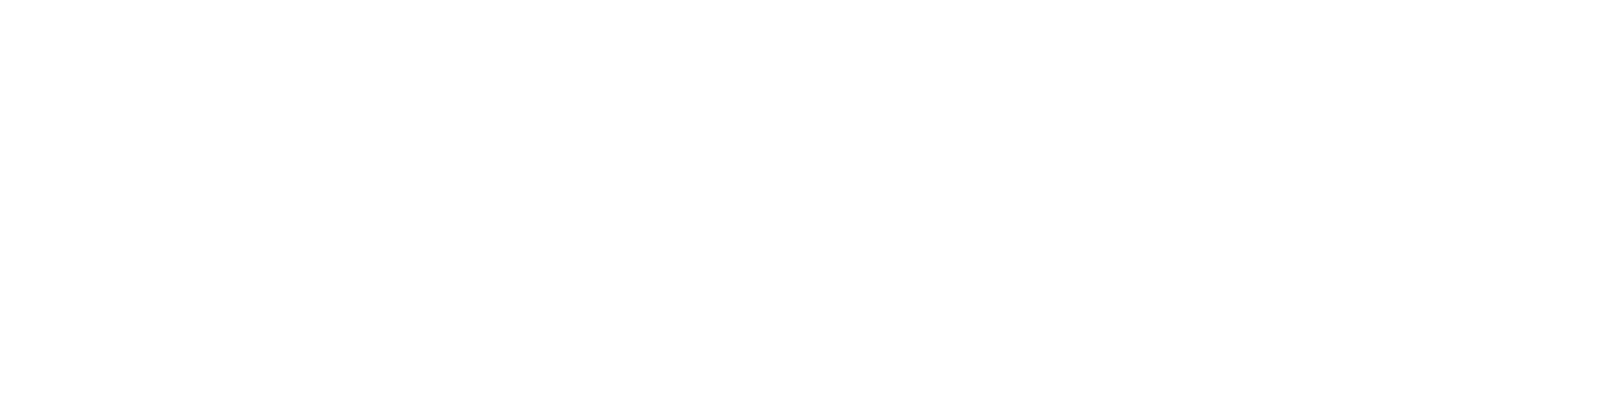 Estrutura Financeira - Consultoria - Planejamento Estratégico - Ribeirão Preto/SP